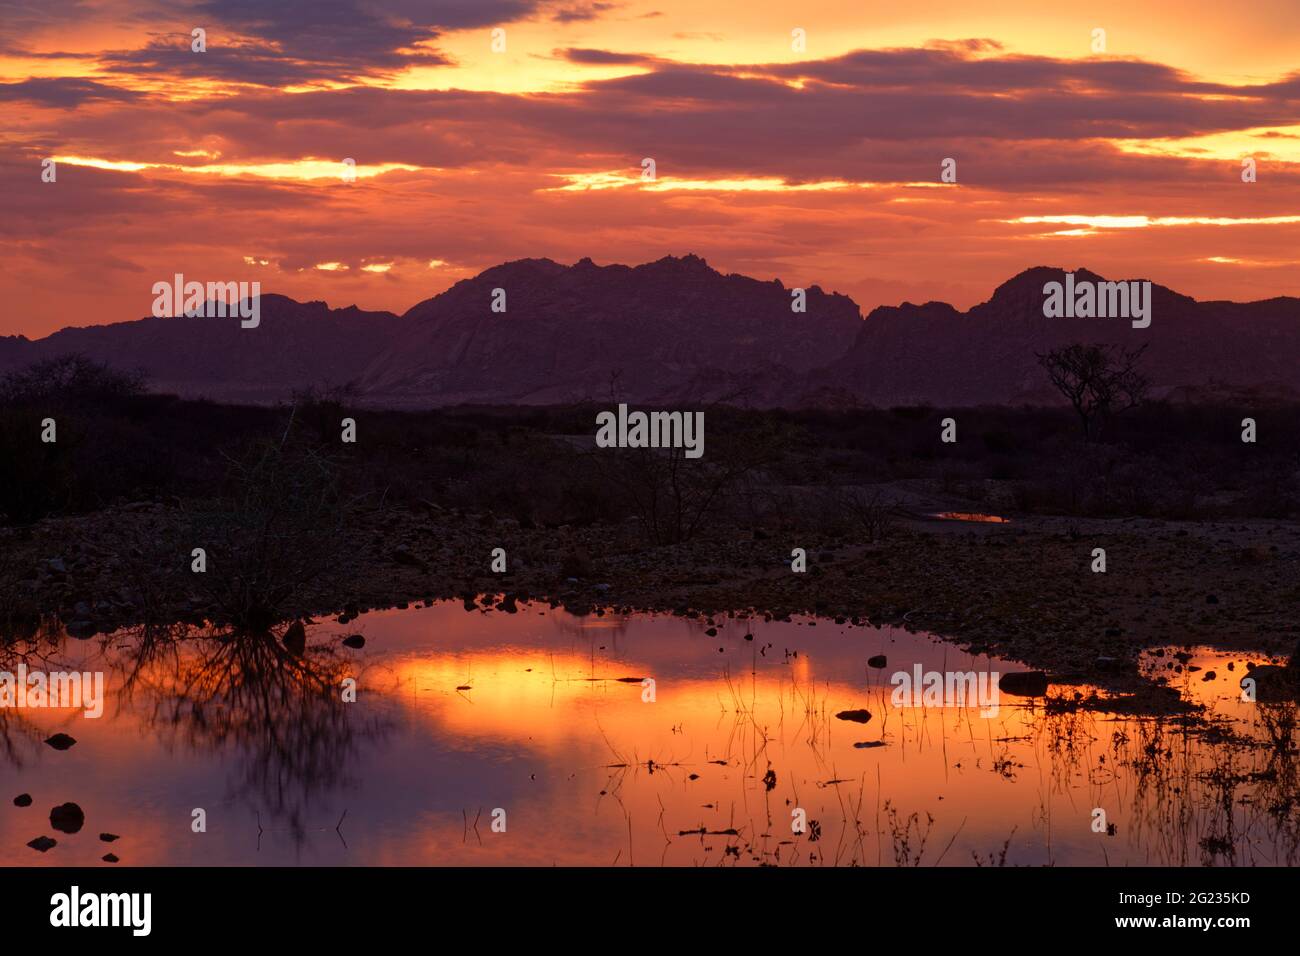 Near guest farm Omandumba: Sunset over Erongo Mountains, evening sky reflecting in puddle, rainy season, near Omaruru, Erongo Region, Namibia Stock Photo